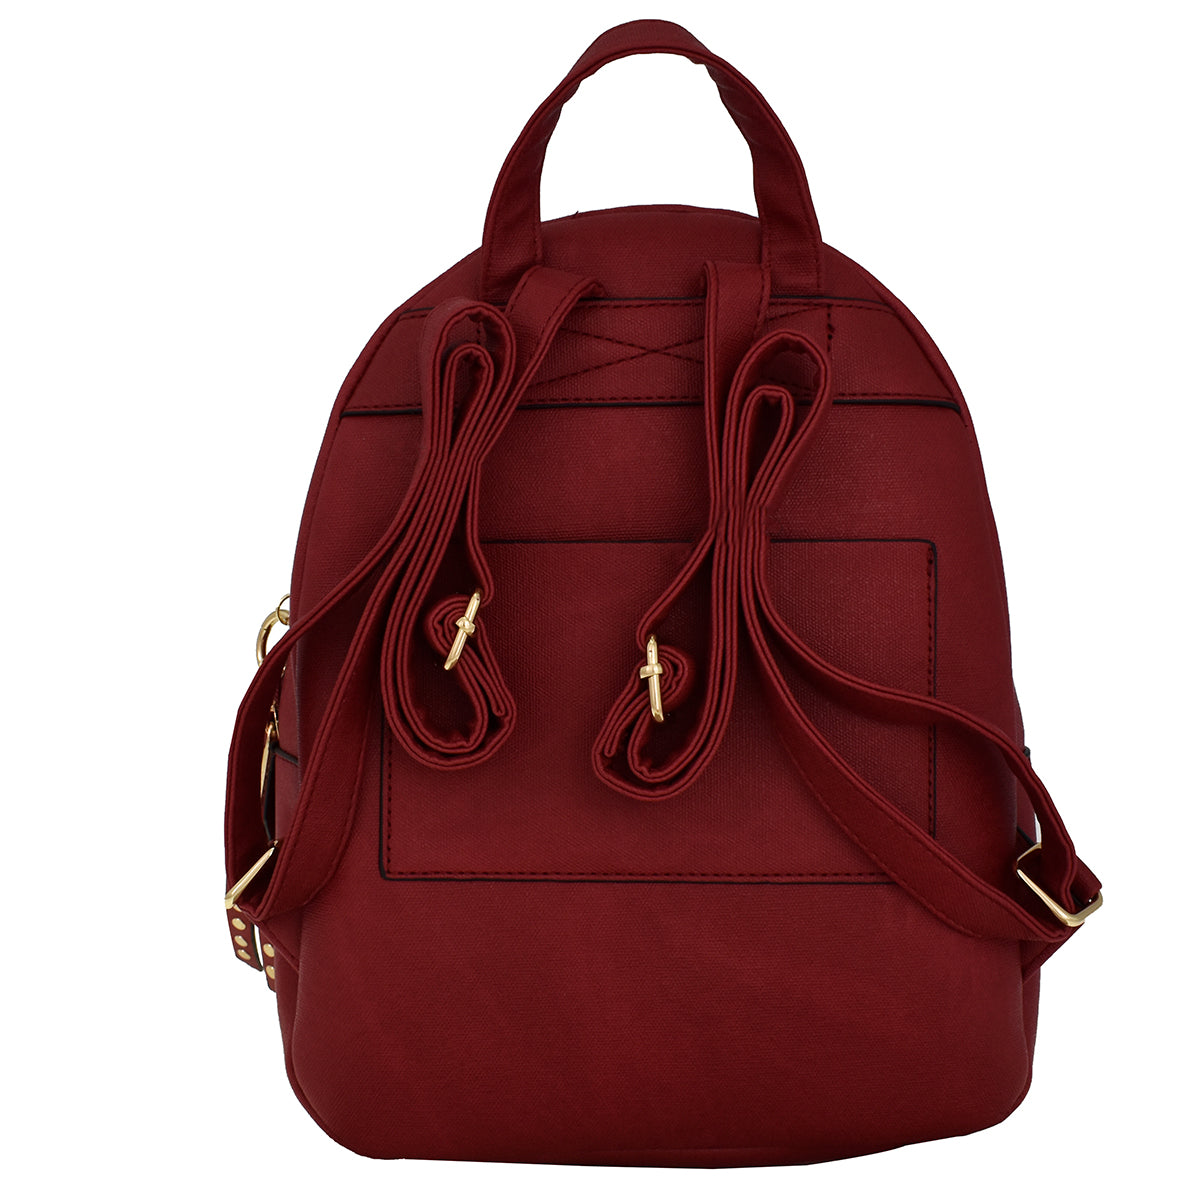 Backpack [Chatties] con doble bolsa y diseño de estoperoles color rojo